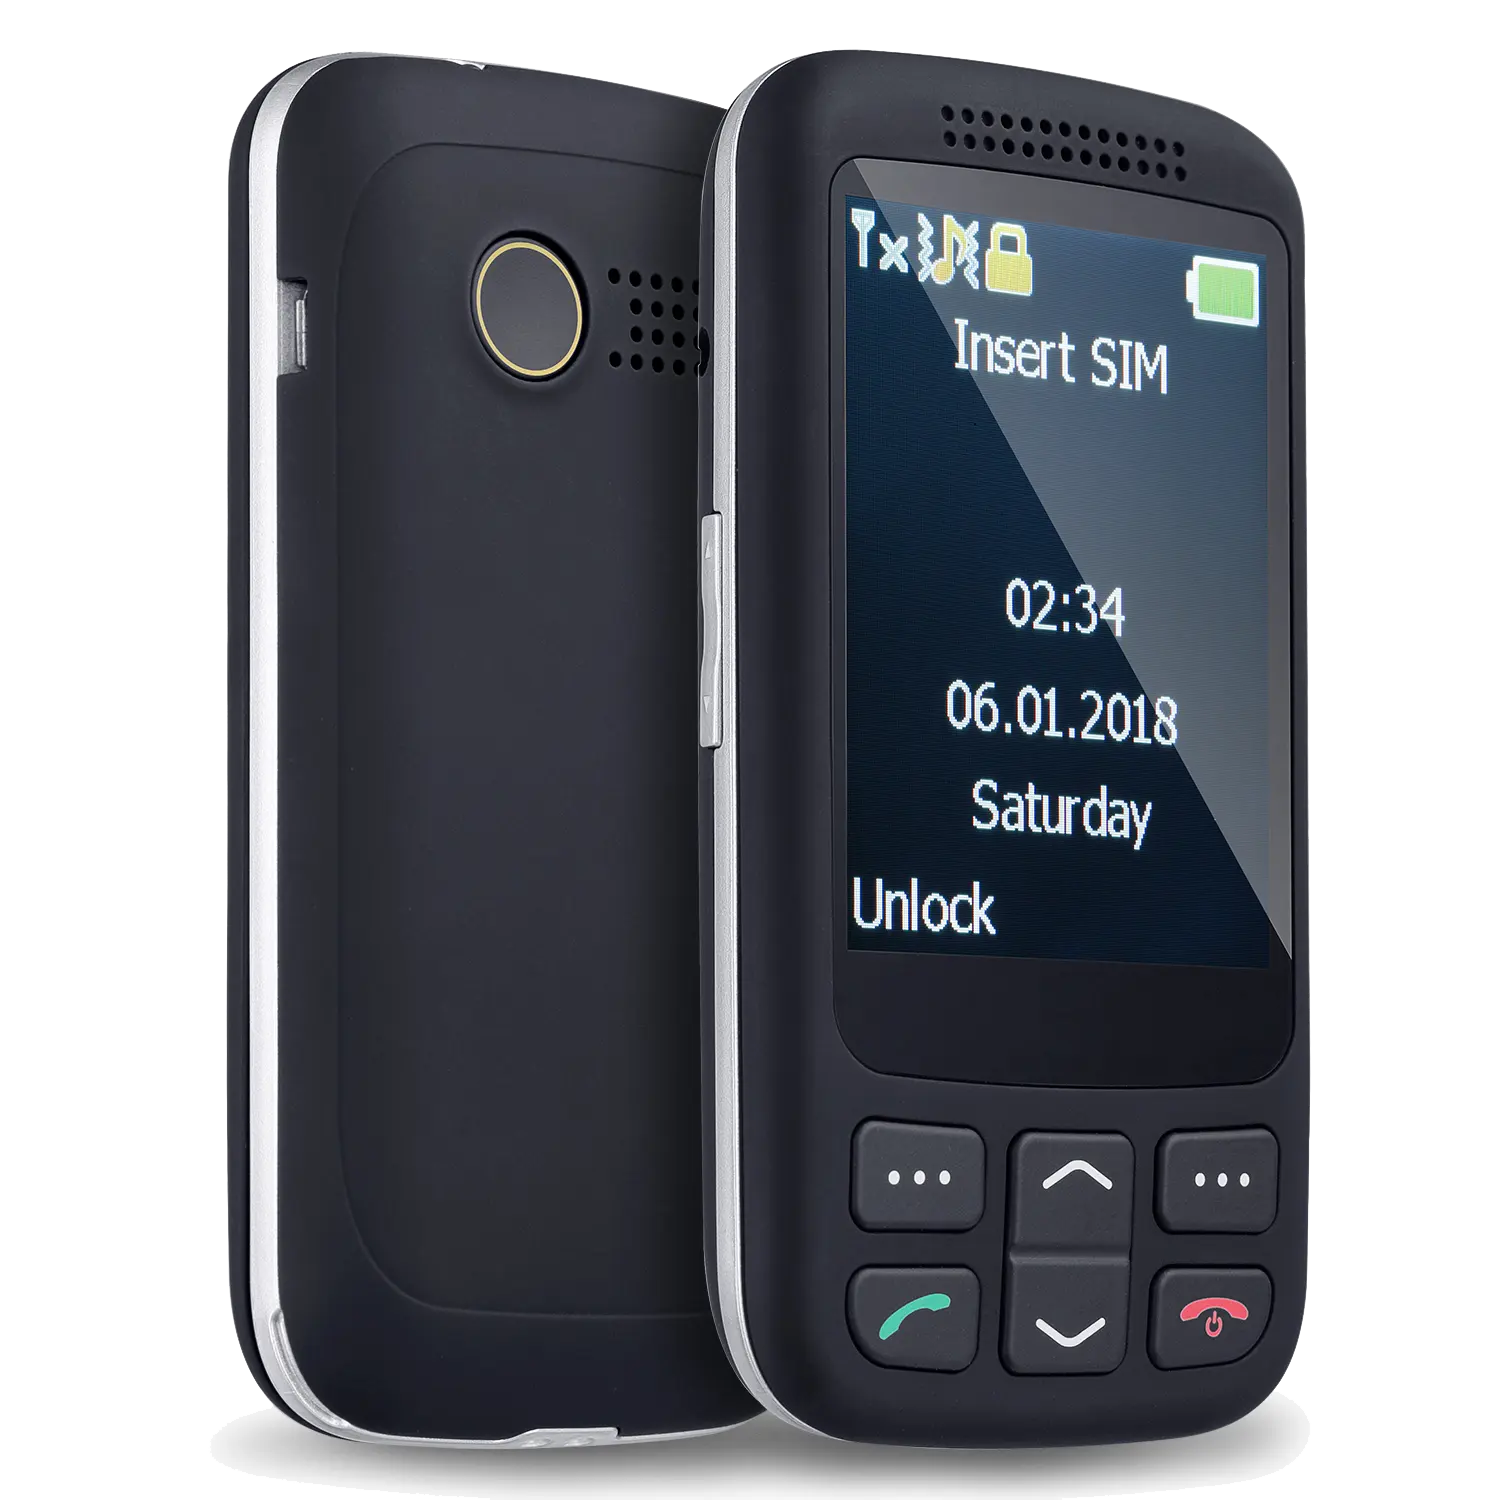 Telefone celular dual sim sem botão, venda quente clássico baixo preço deslizante